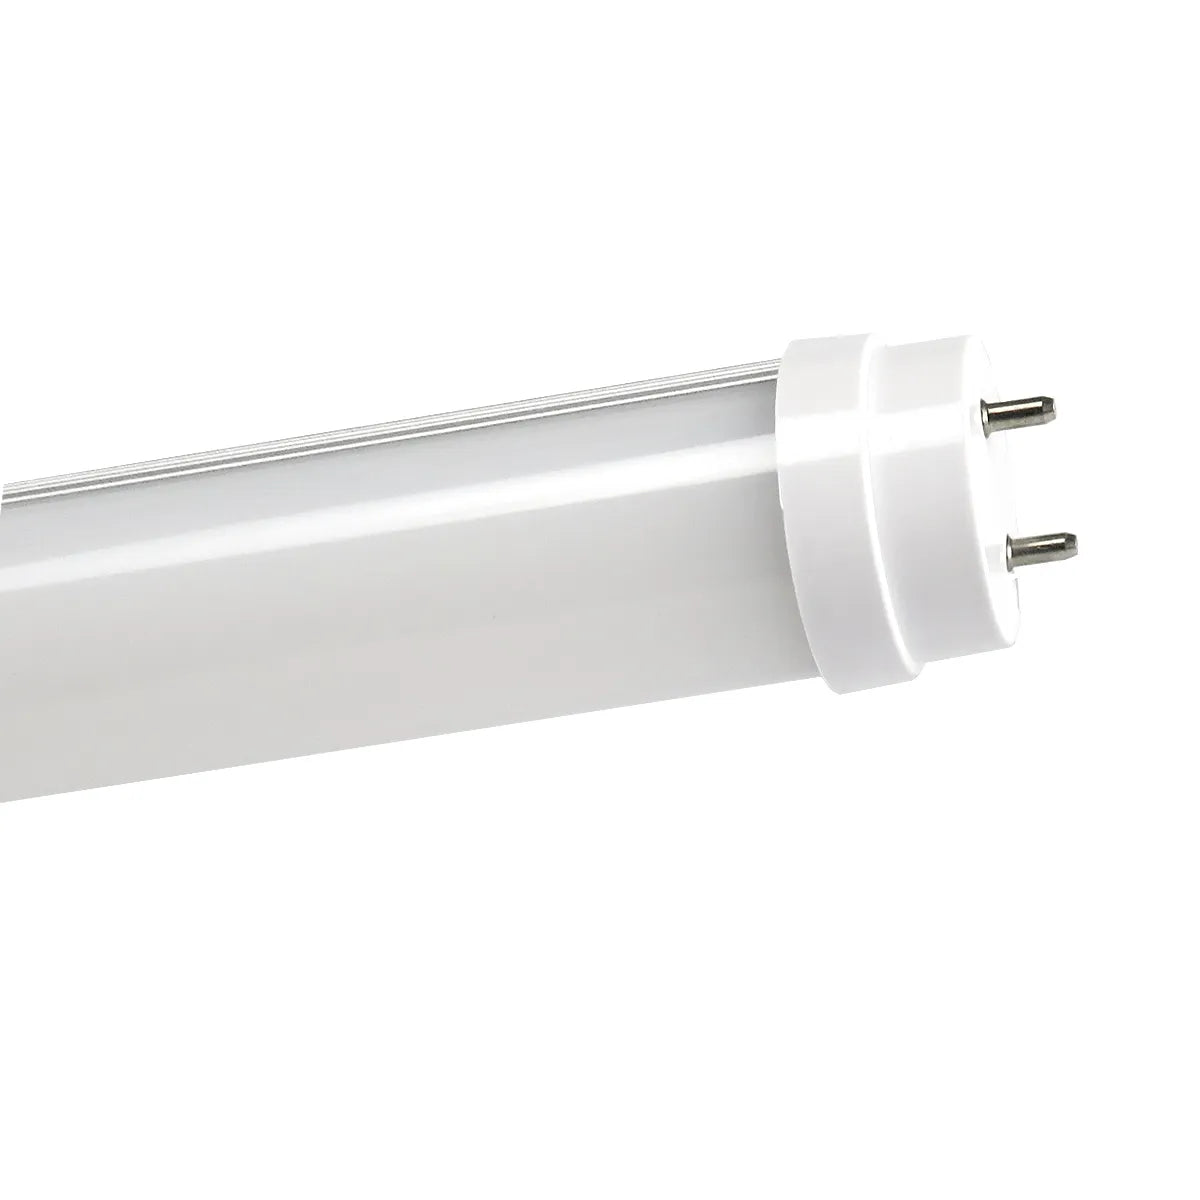 LED TL-Röhren 150 cm • Pro High Lumen | LEDWINKEL-Online